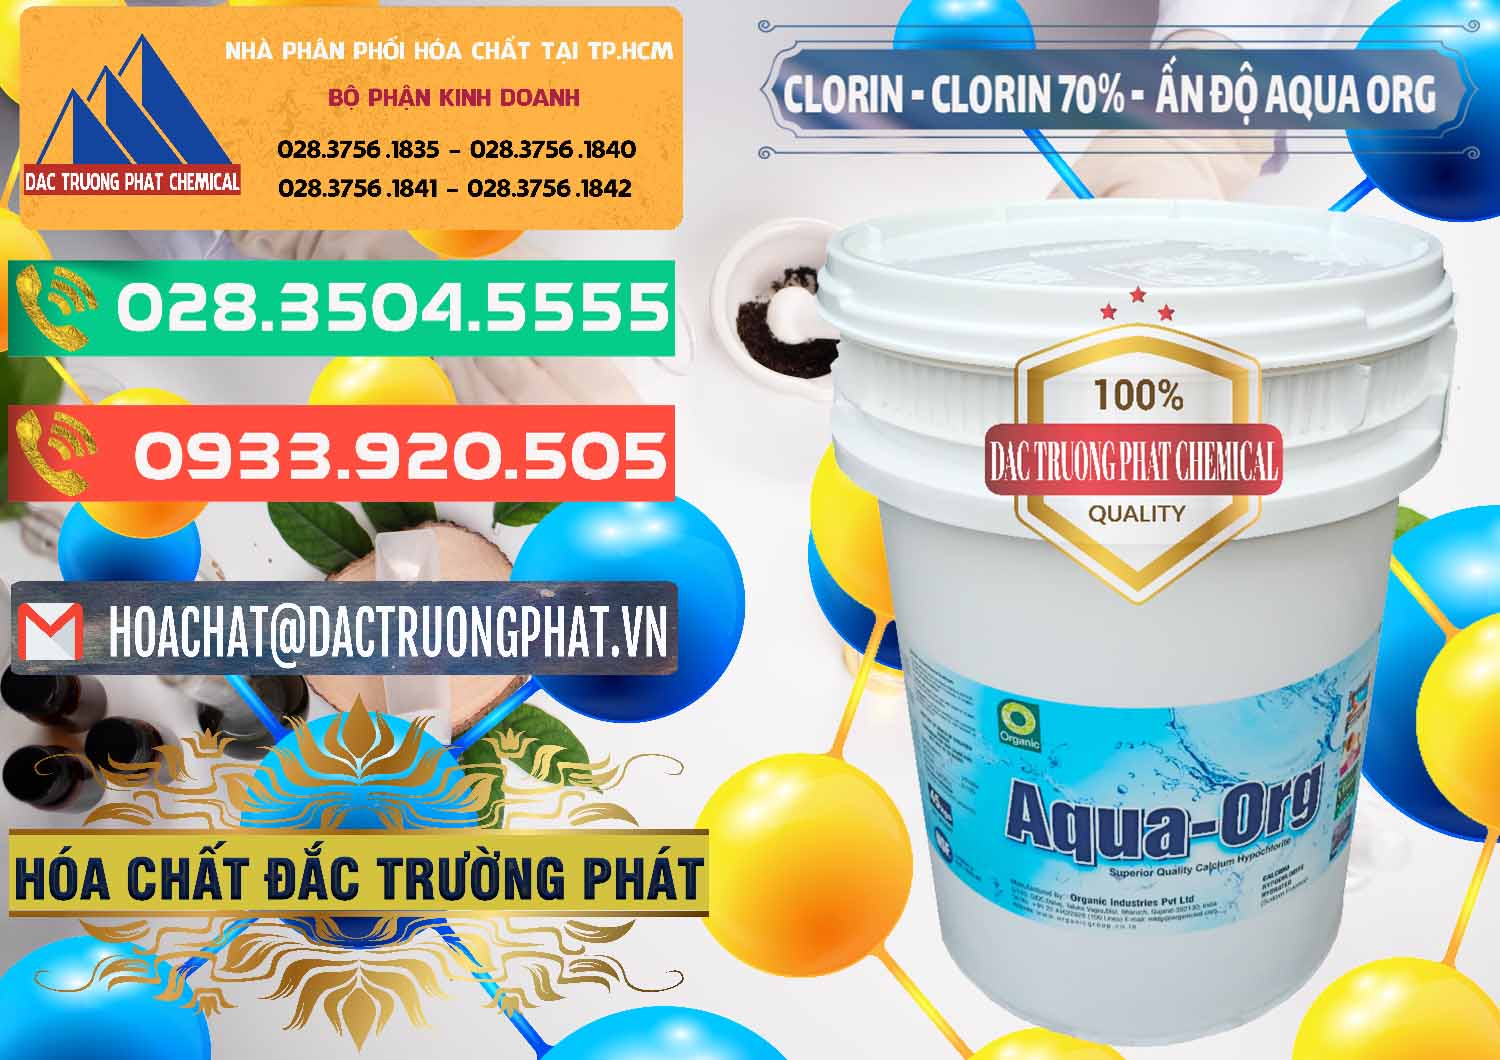 Nơi chuyên nhập khẩu _ bán Chlorine – Clorin Ấn Độ Aqua ORG Organic India - 0051 - Công ty bán và cung cấp hóa chất tại TP.HCM - congtyhoachat.com.vn